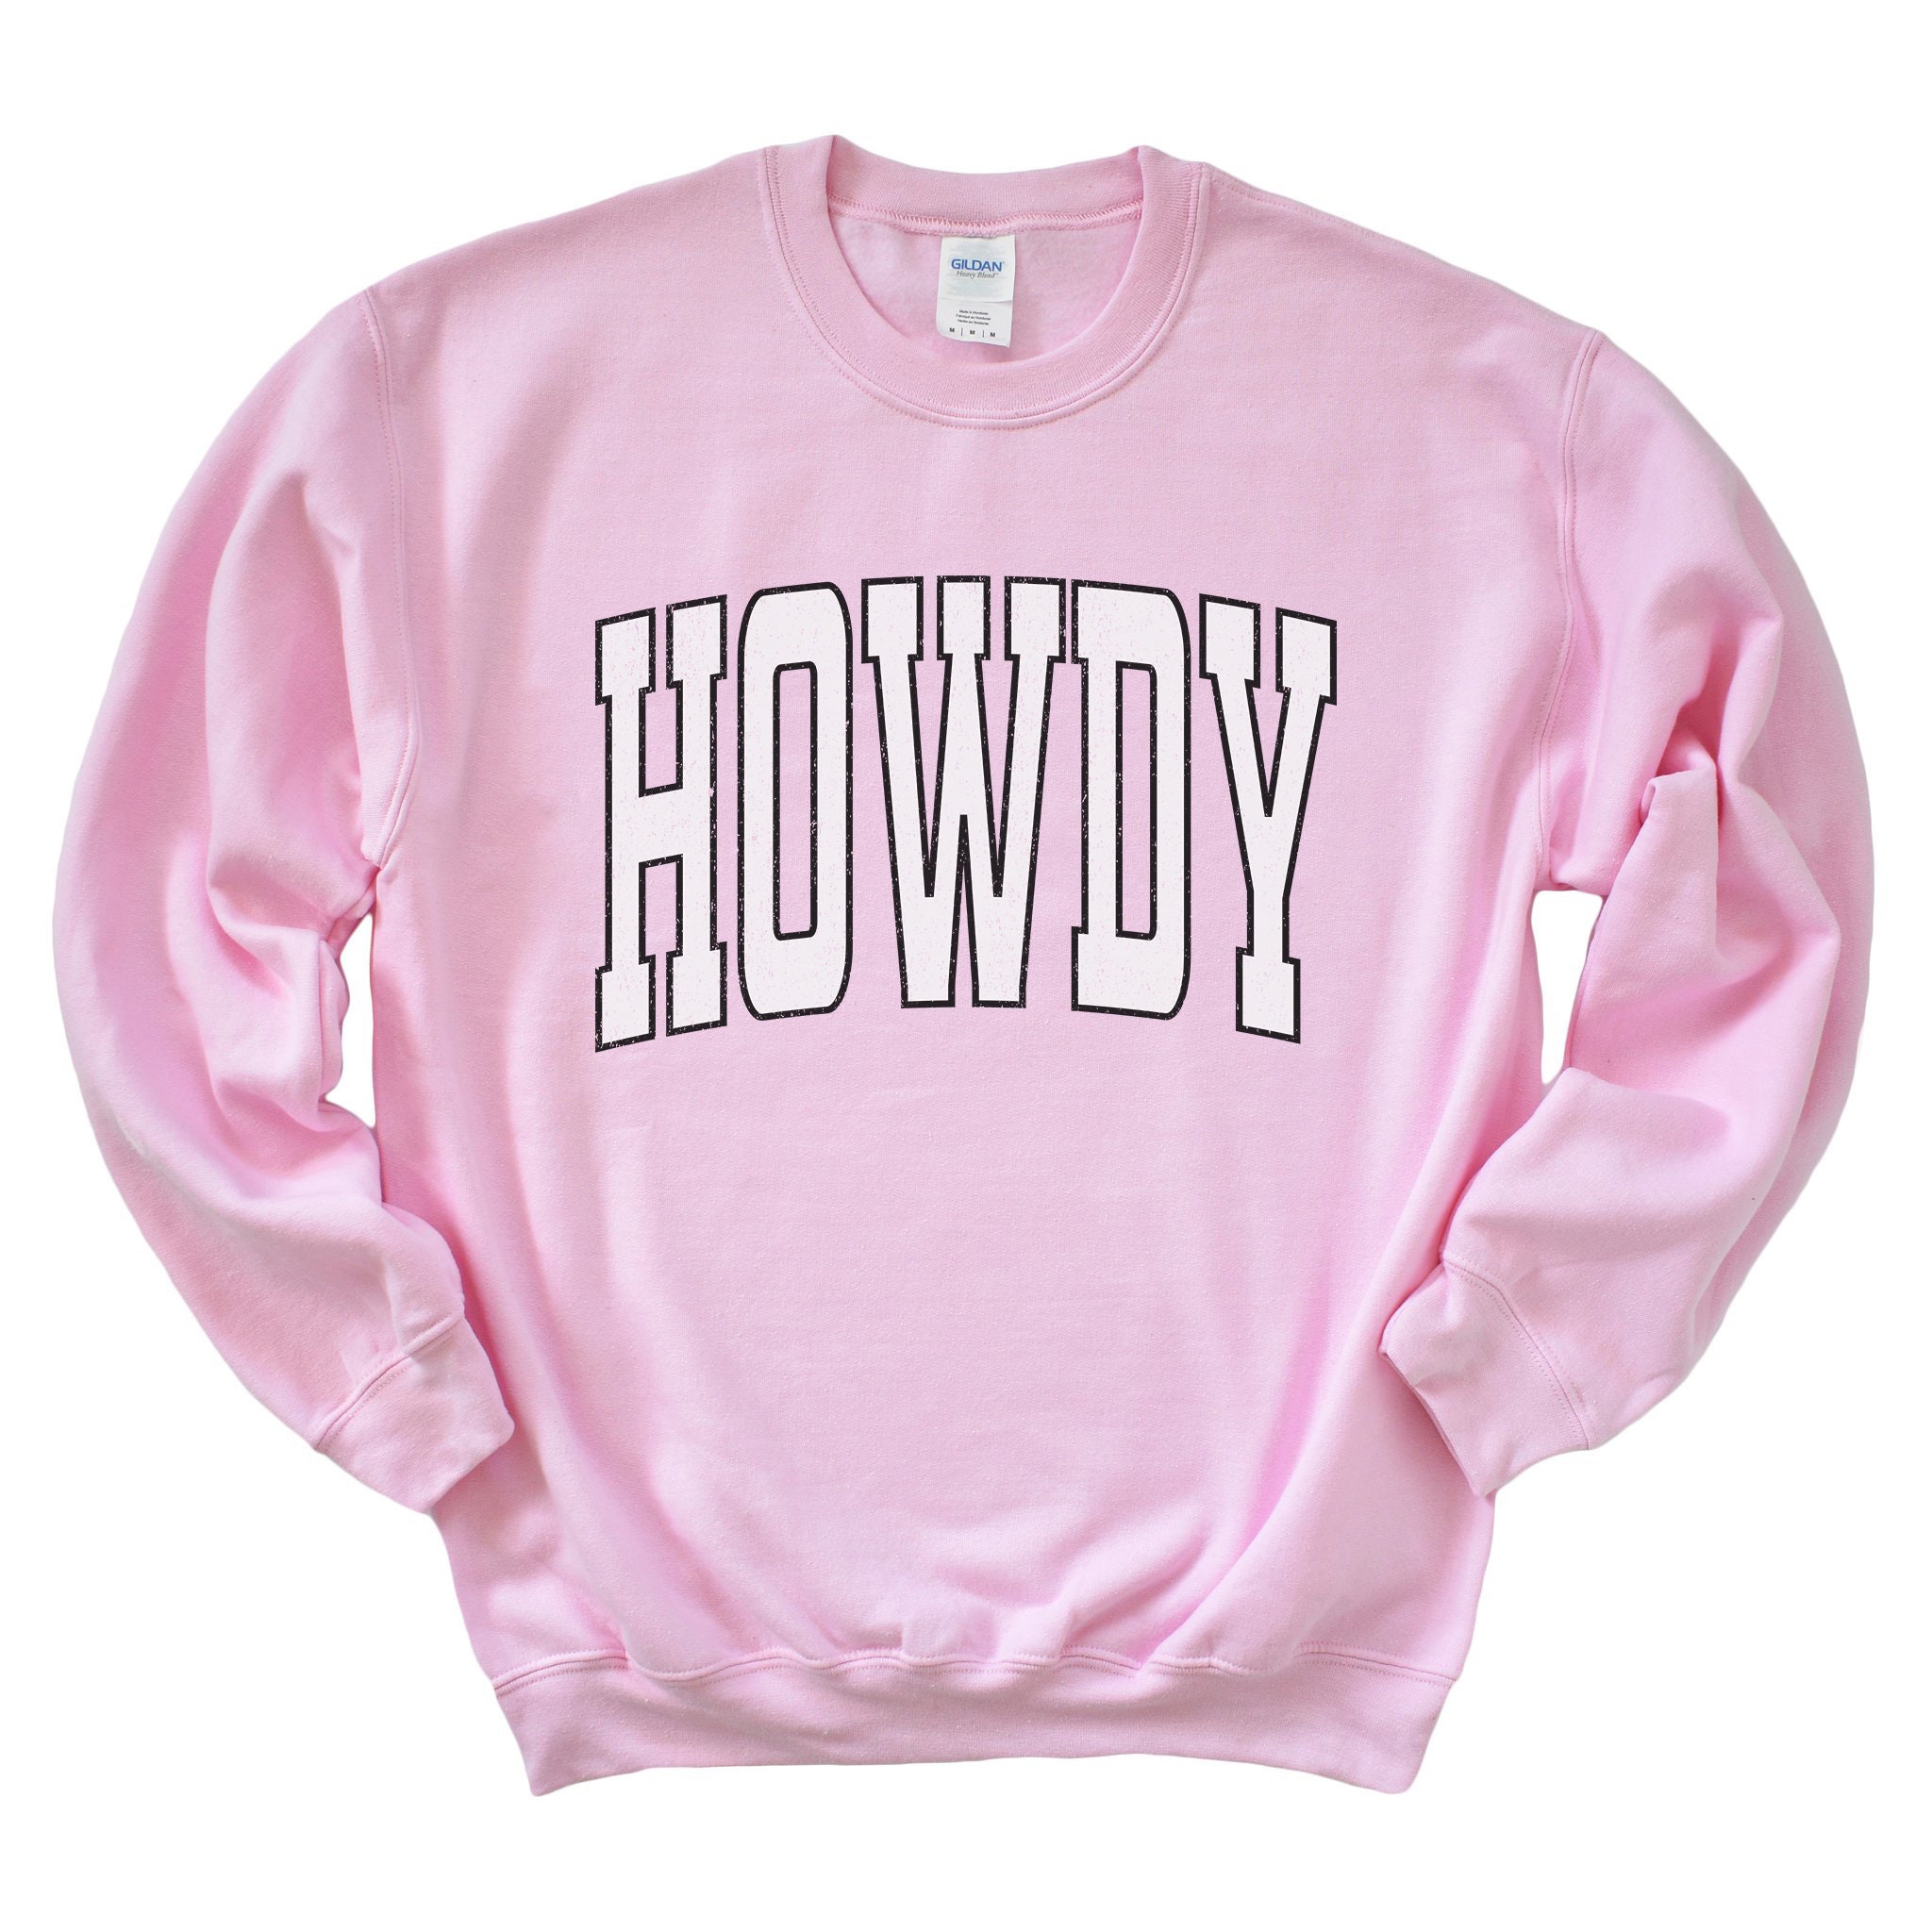 Howdy Sweatshirt Western Crewneck Oversized Varsity Shirt | Etsy